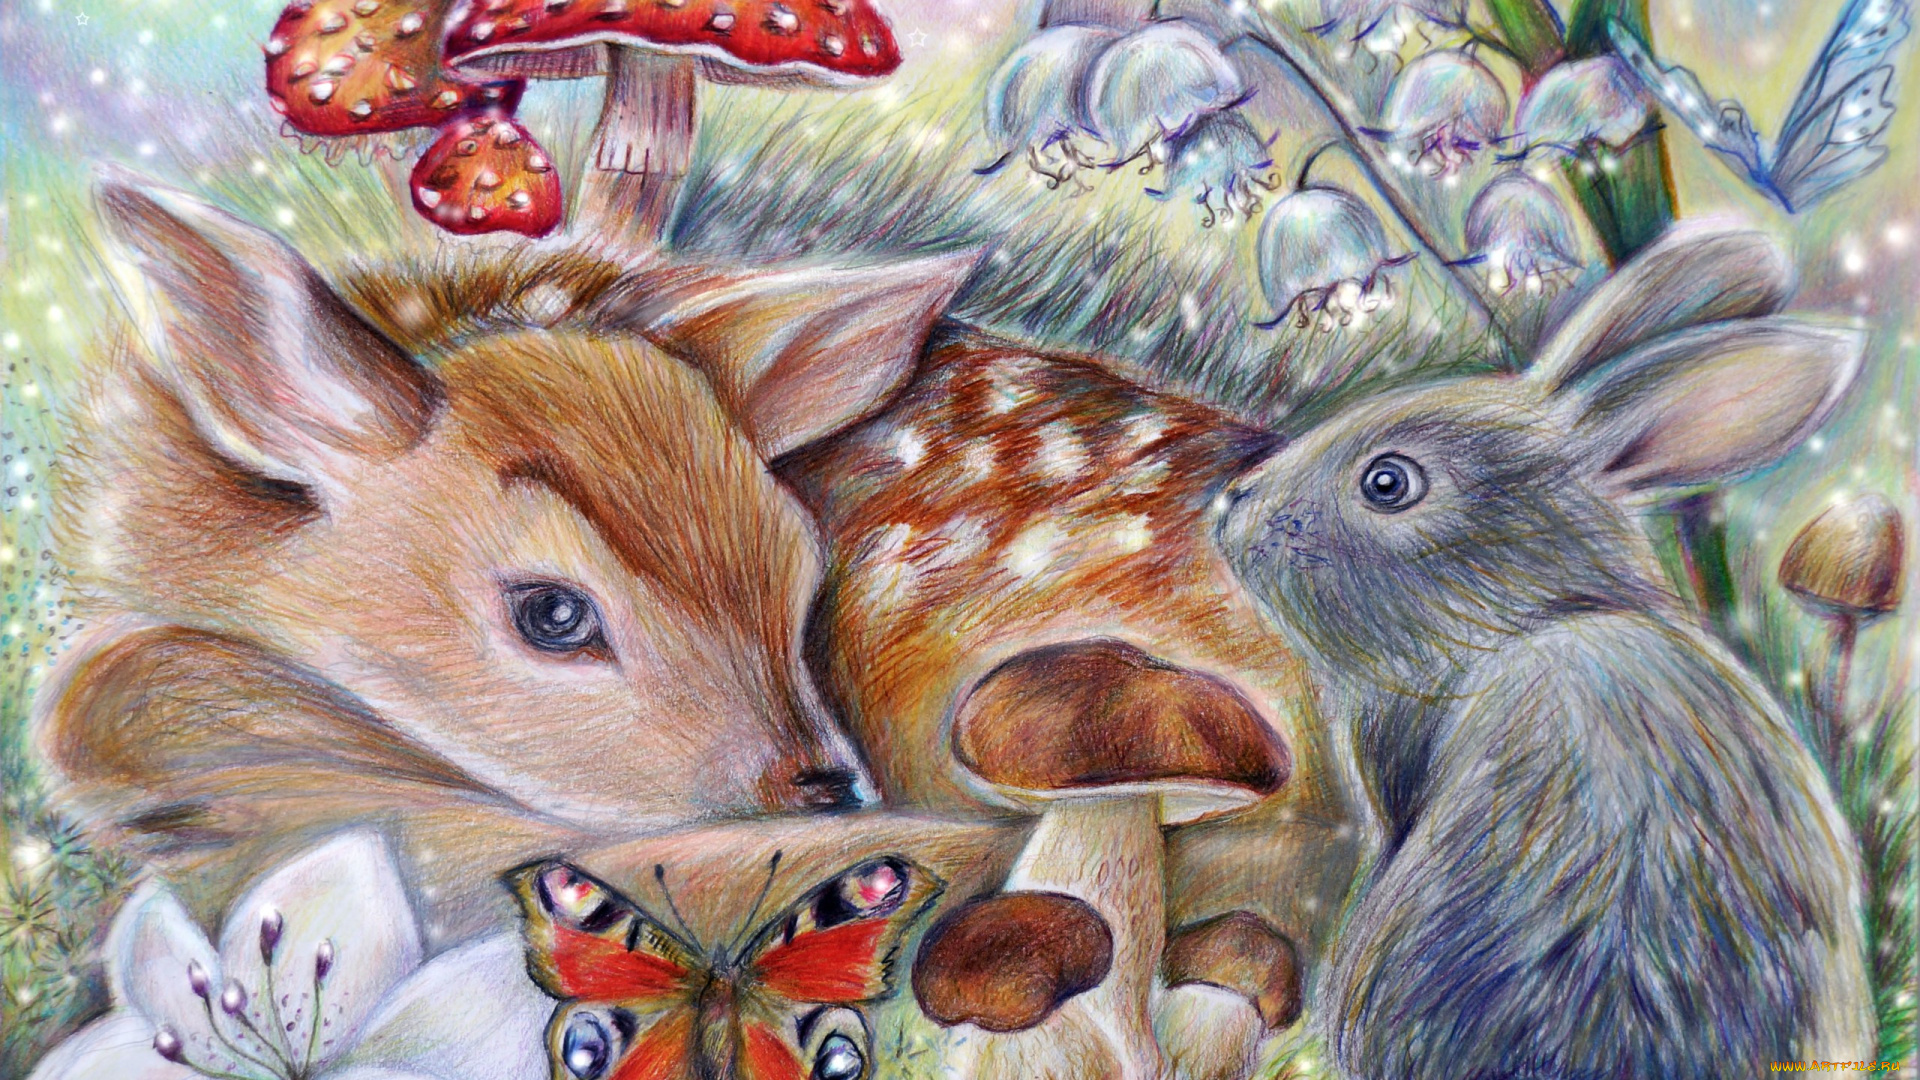 рисованное, животные, thumper, bambi, кролик, арт, олененок, бемби, бабочка, гриб